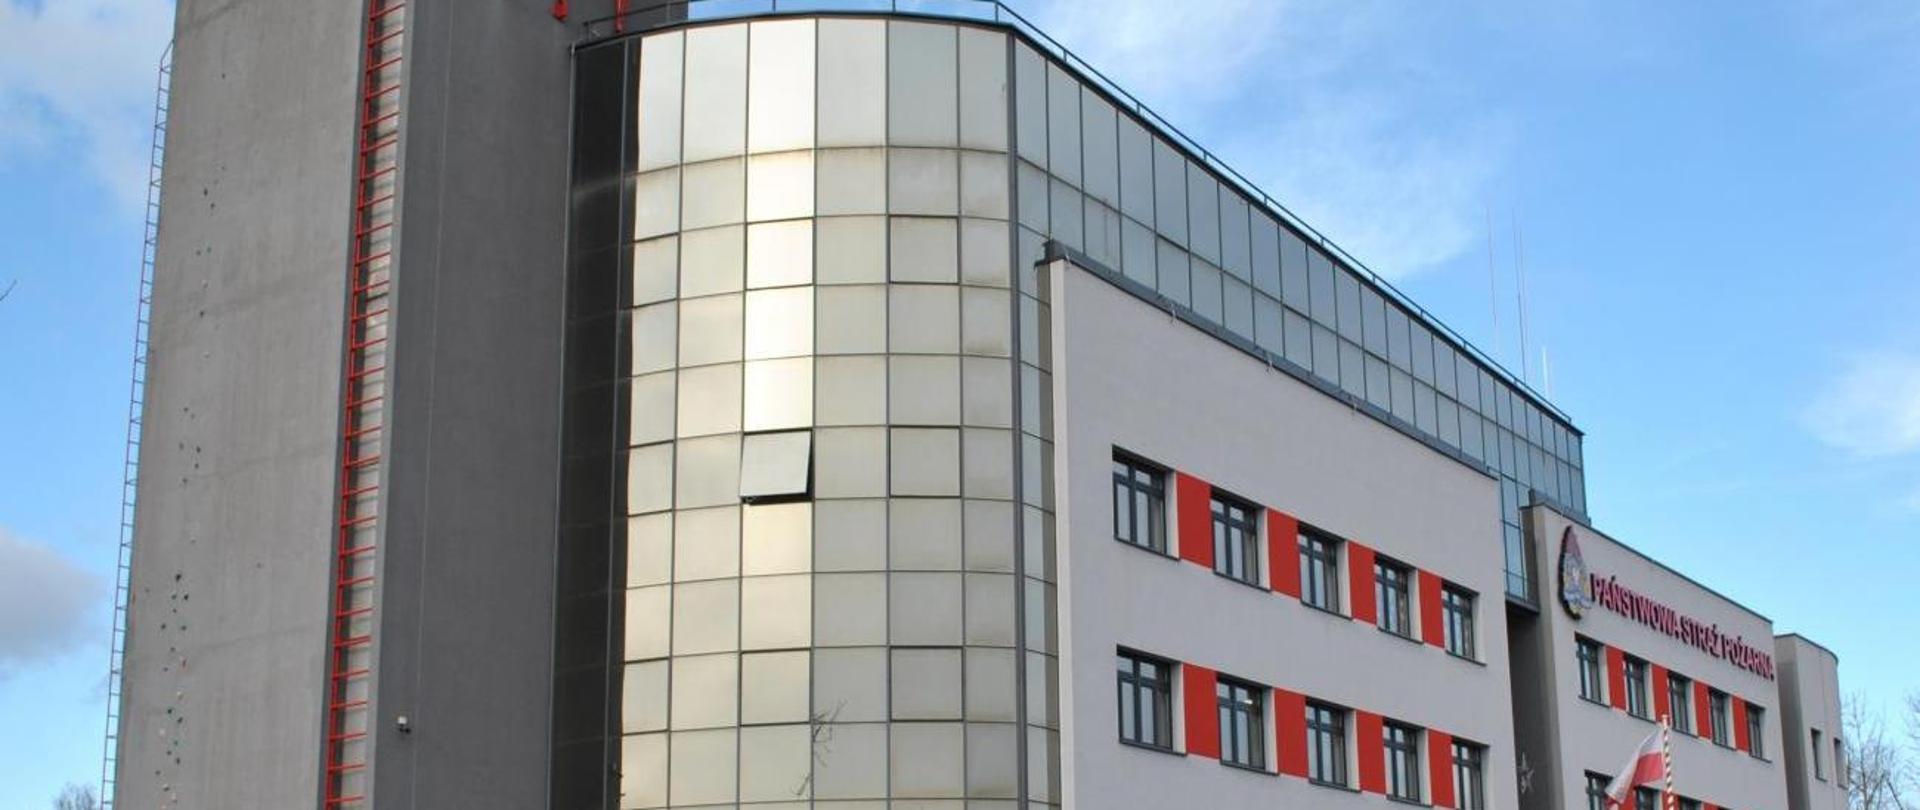 Zdjęcie budynku Komendy Wojewódzkiej PSP w Krakowie. Z prawej strony zdjęcia widać dwa rzędy okien z czerwonymi wstawkami. Nad nimi widnieje napis Państwowa Straż Pożarna. Z lewej strony budynku znajduje się czerwona drabina.